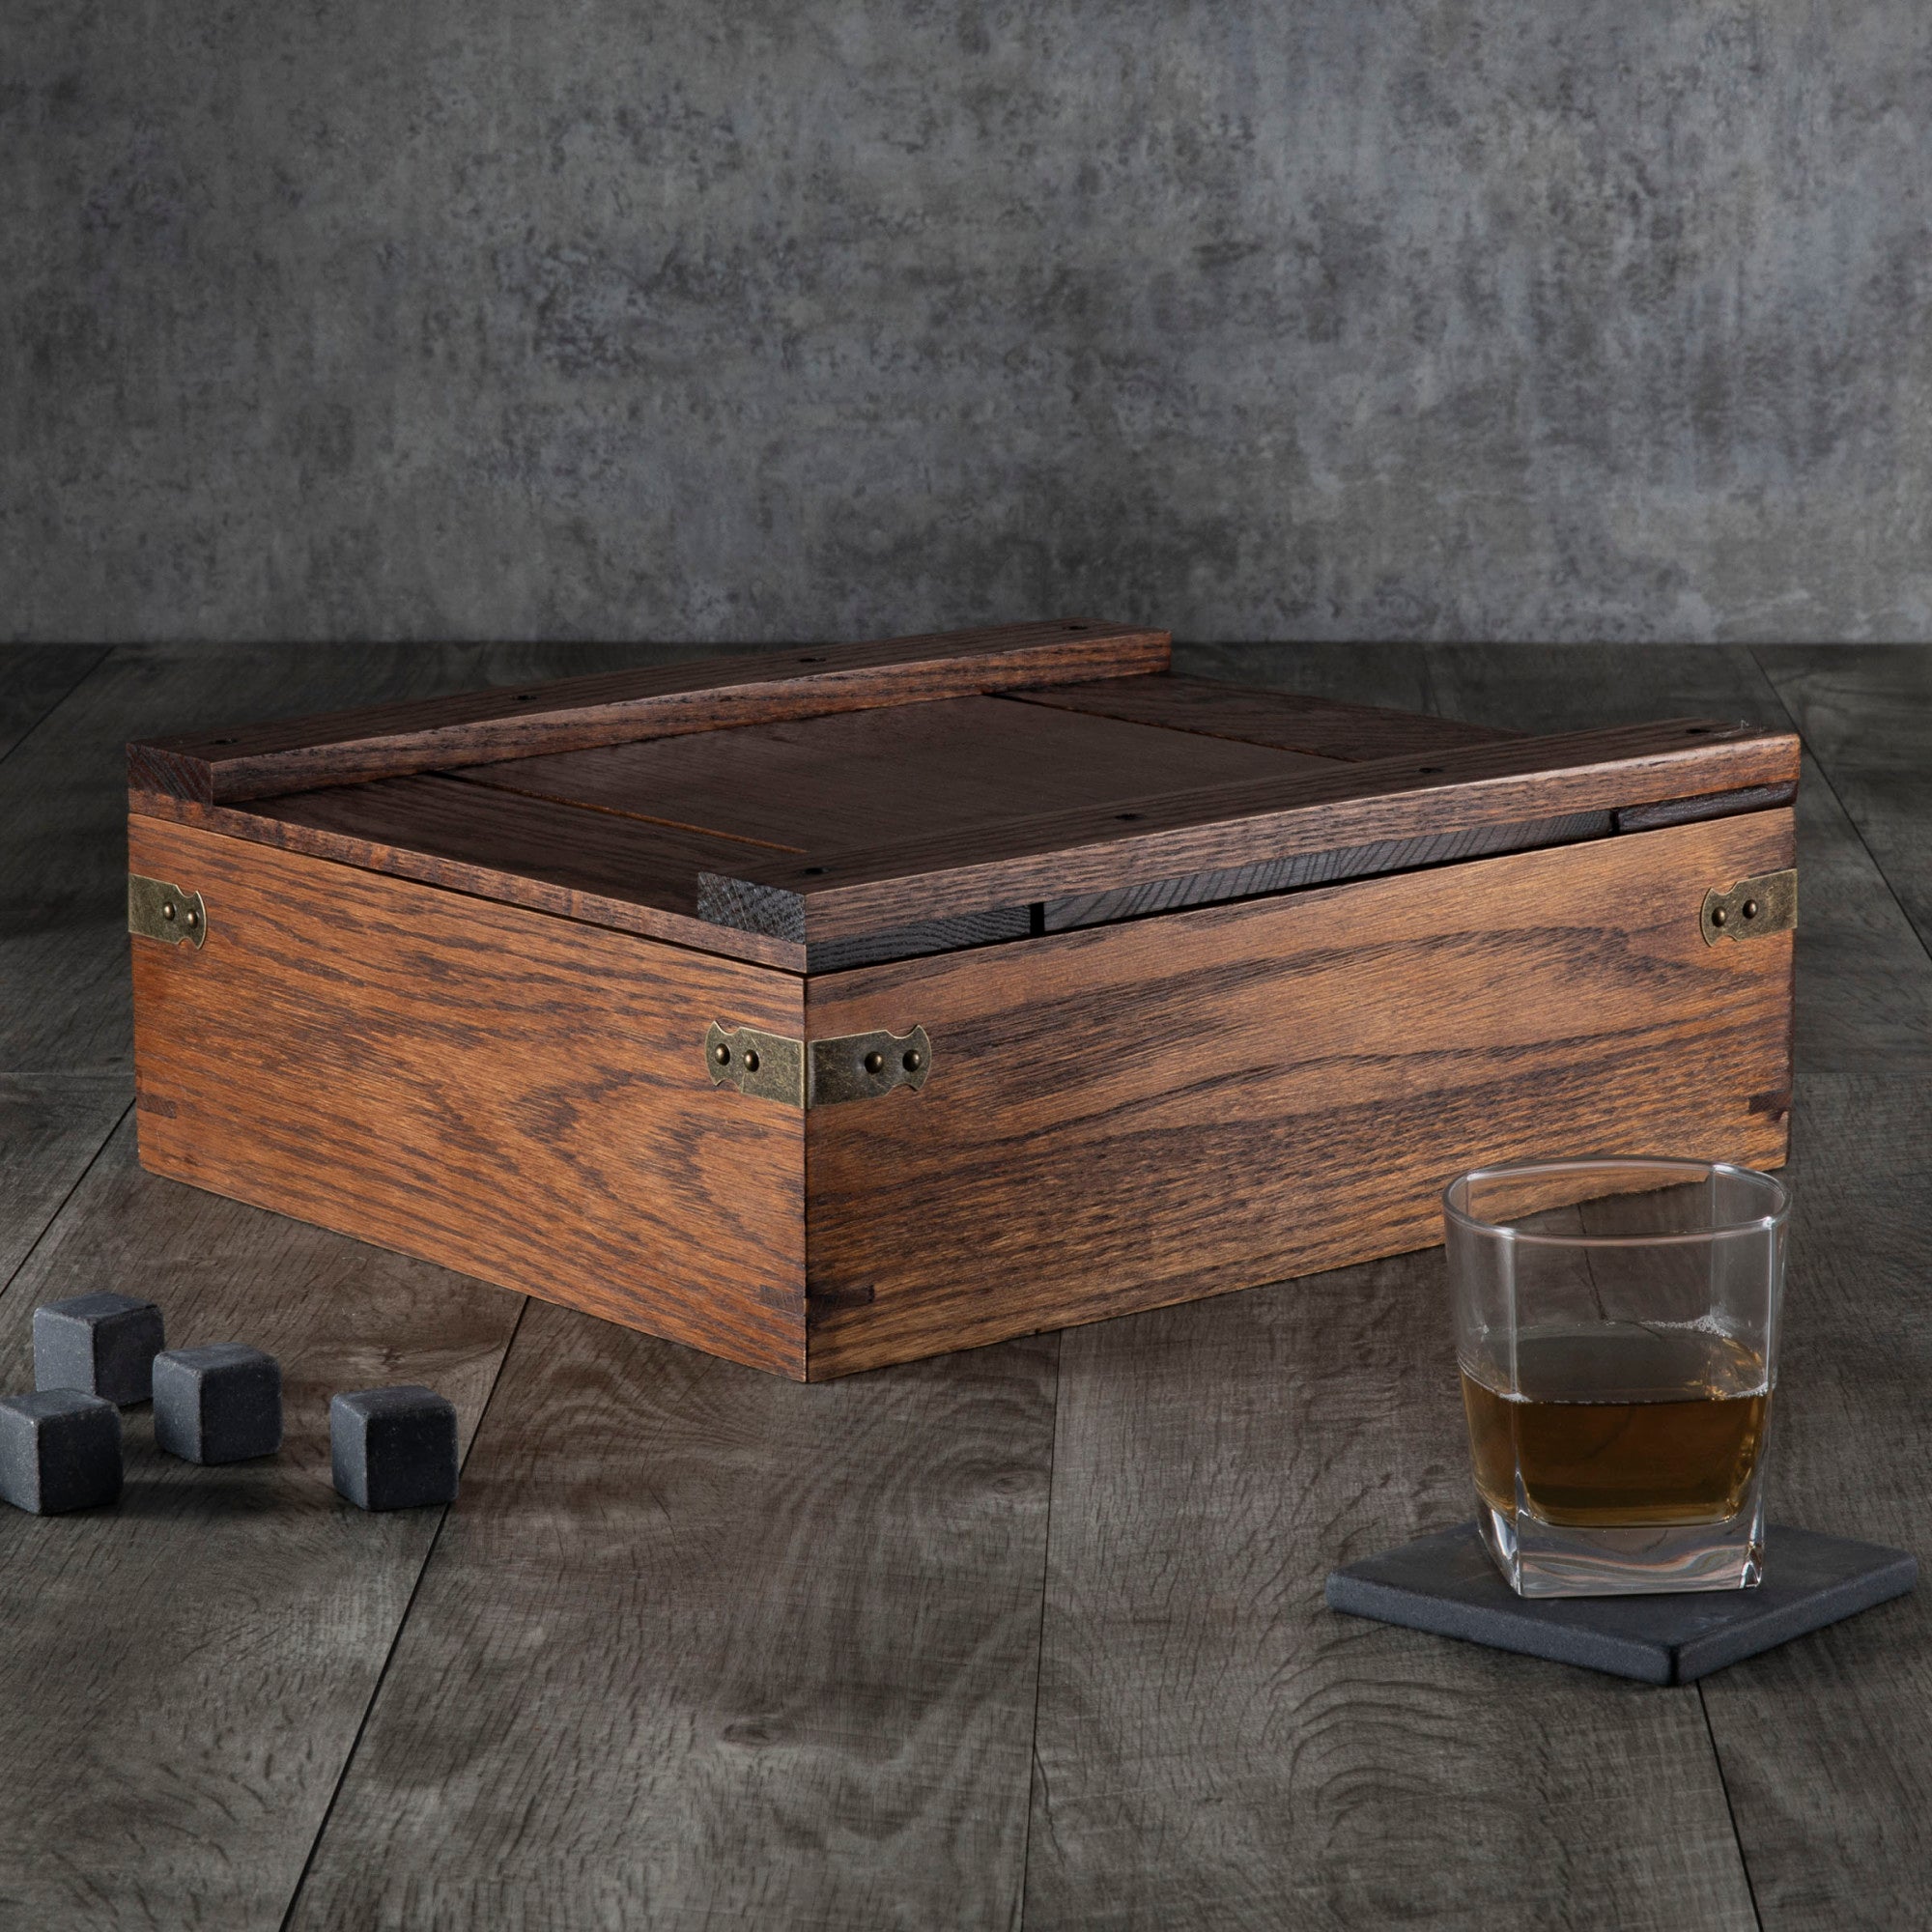 Nashville Predators - Whiskey Box Gift Set